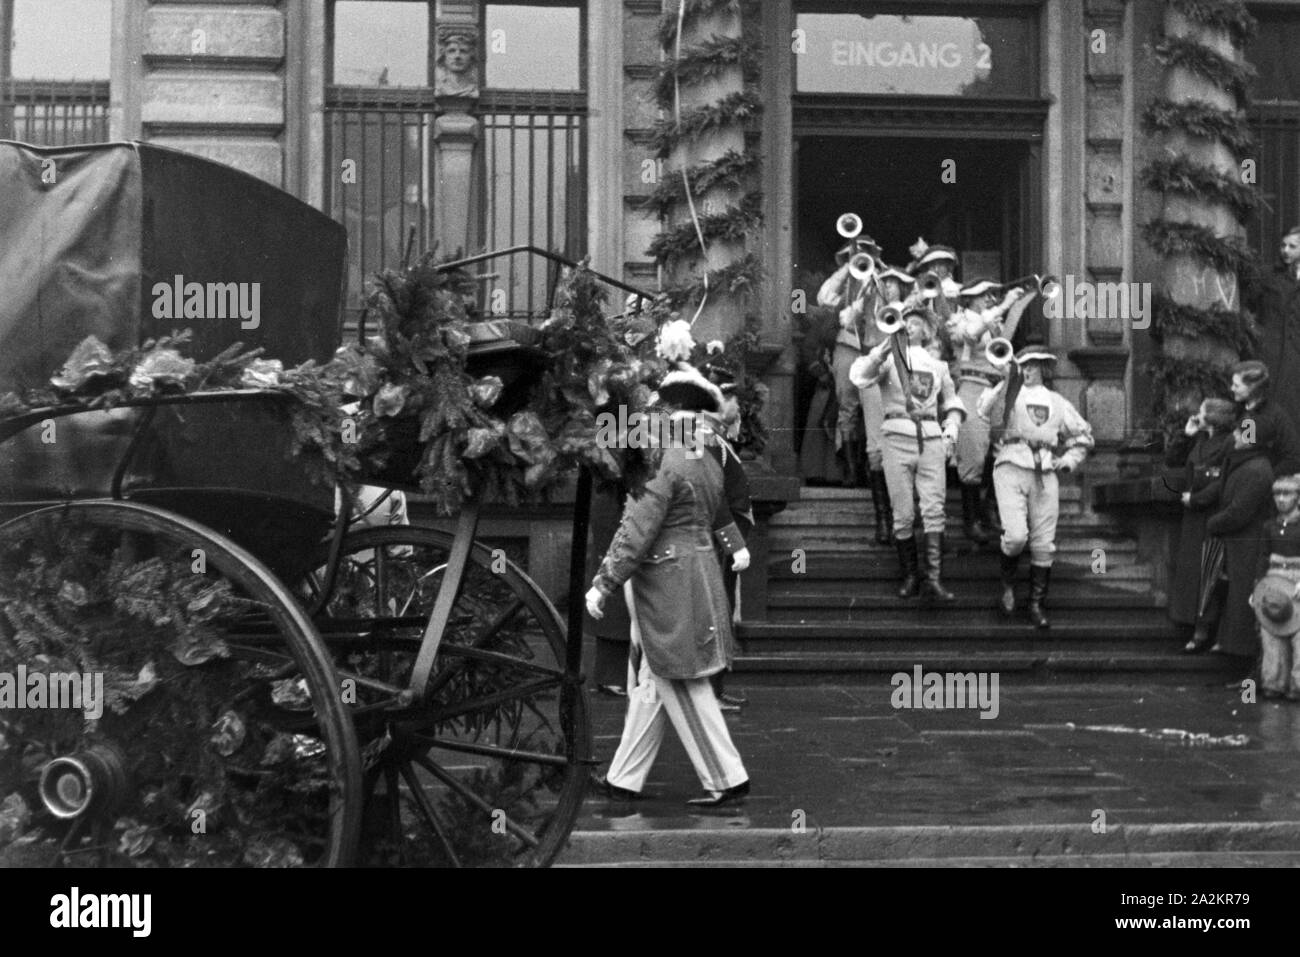 Mitten im Karneval der Session 1937 in Düsseldorf unter dem Motto 'Lachendes Volk', Deutschland 1930er Jahre. Amidst the carnival at Duesseldorf with the slogan 'Lachendes Volk', Germany 1930s. Stock Photo